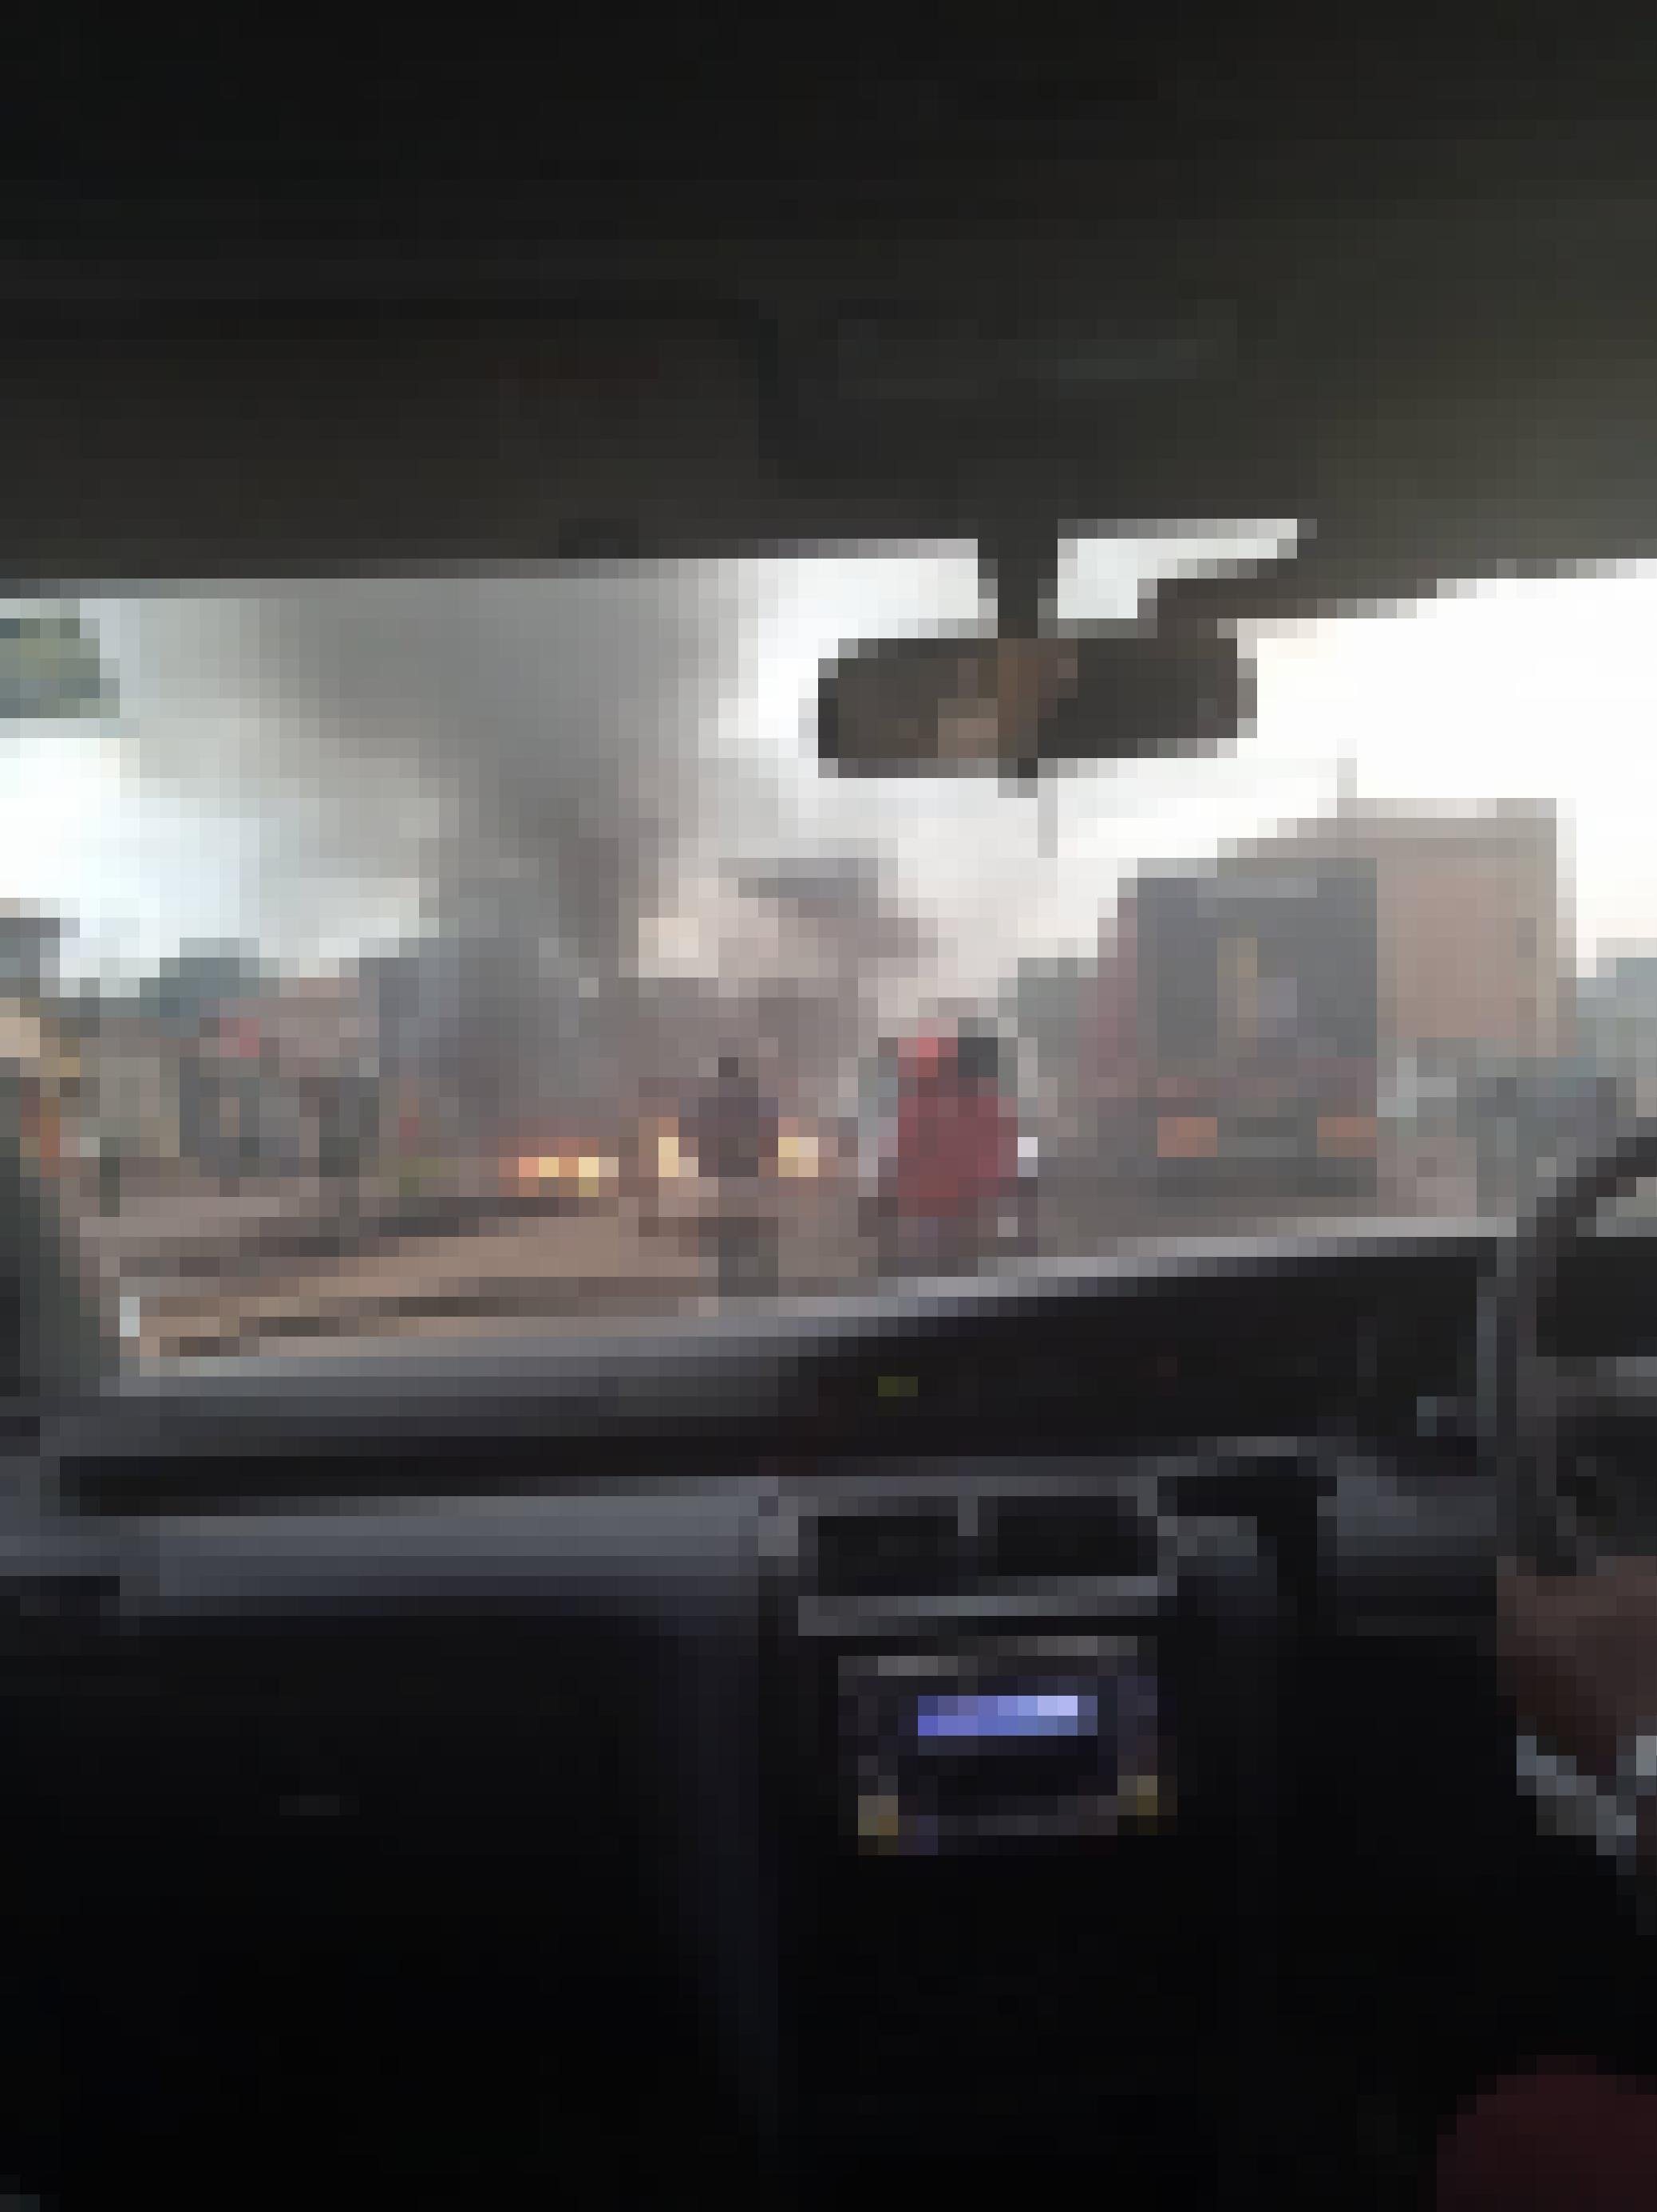 Aus dem Inneren eines Autos heraus sieht man den Verkehr und brennende Barrikaden, die aus Reifen erreichtet wurden. Die Reifen wurden dann angezündet.